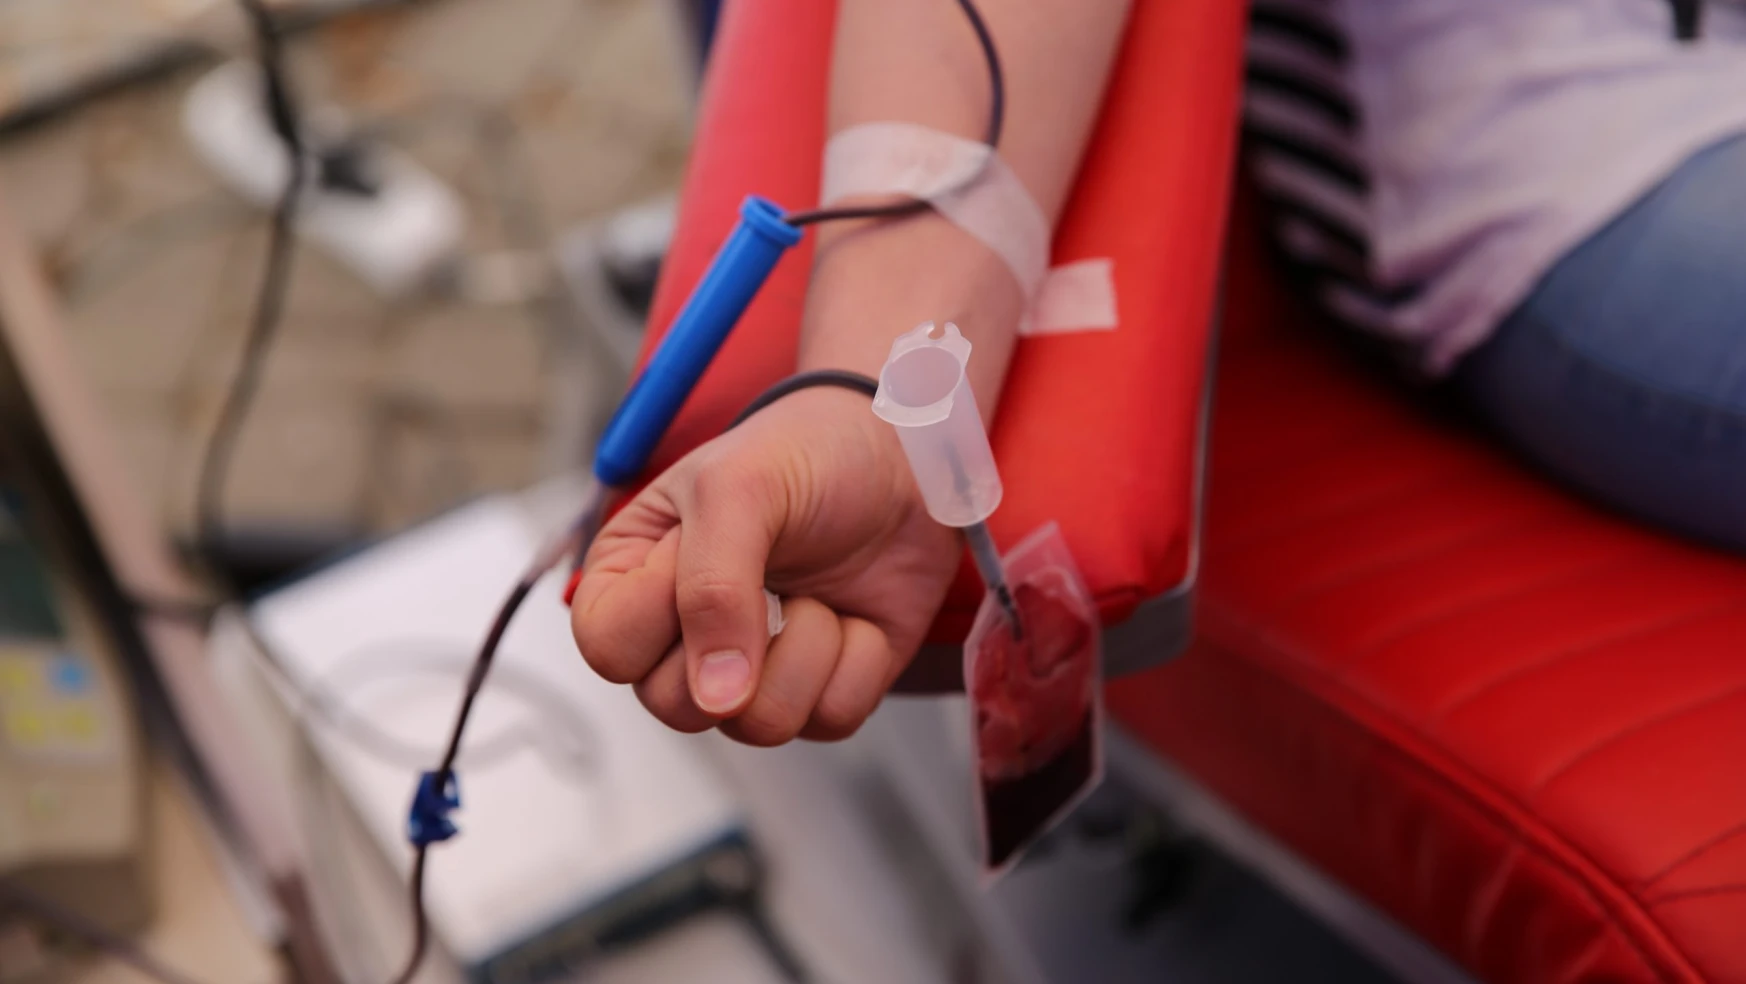 Kan Bağışı Hafta Sonu Kısıtlaması Kapsamında Değil